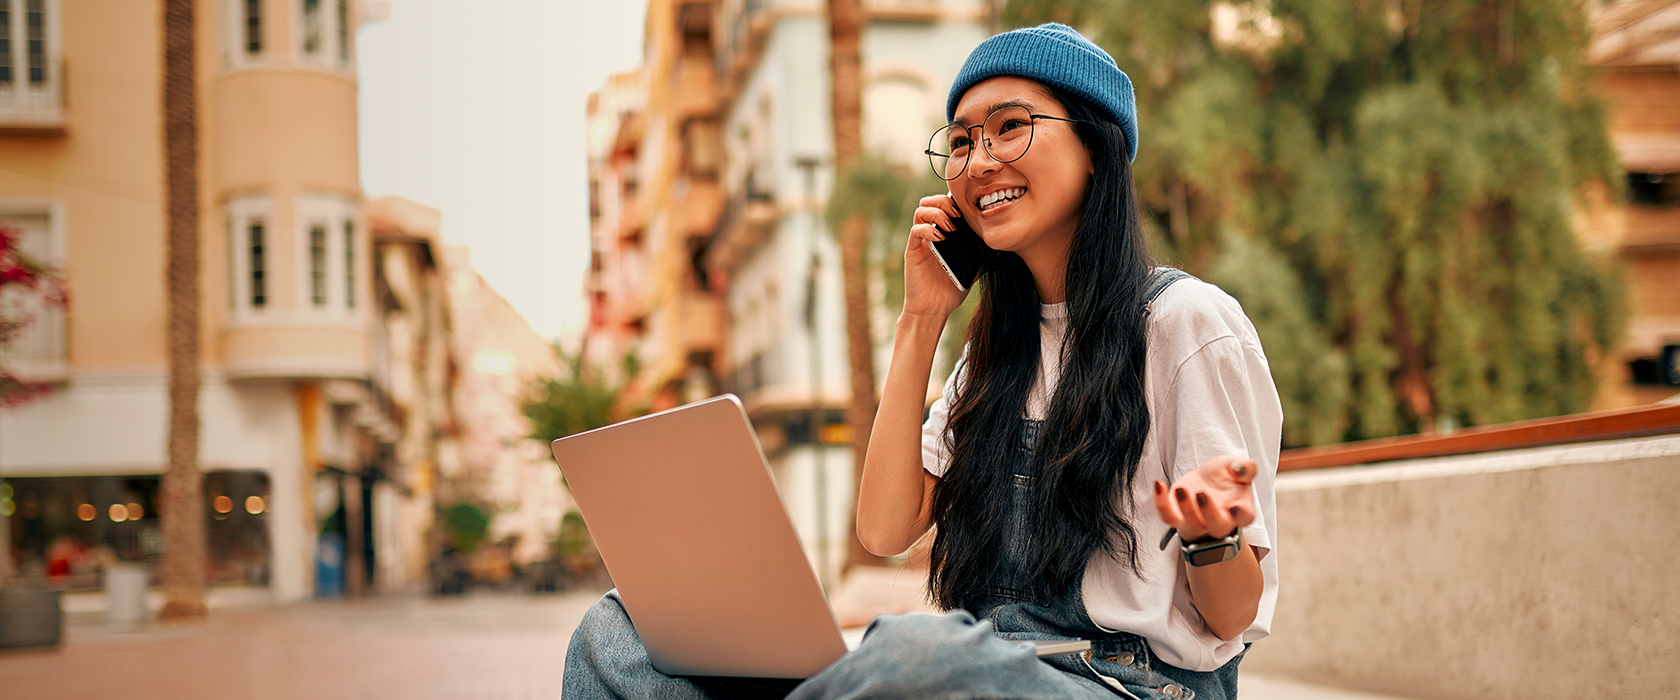 Eine junge Frau mit Brille sitzt im Schneidersitz in einer Promenade. Sie telefoniert, lacht und hat einen Laptop dabei.